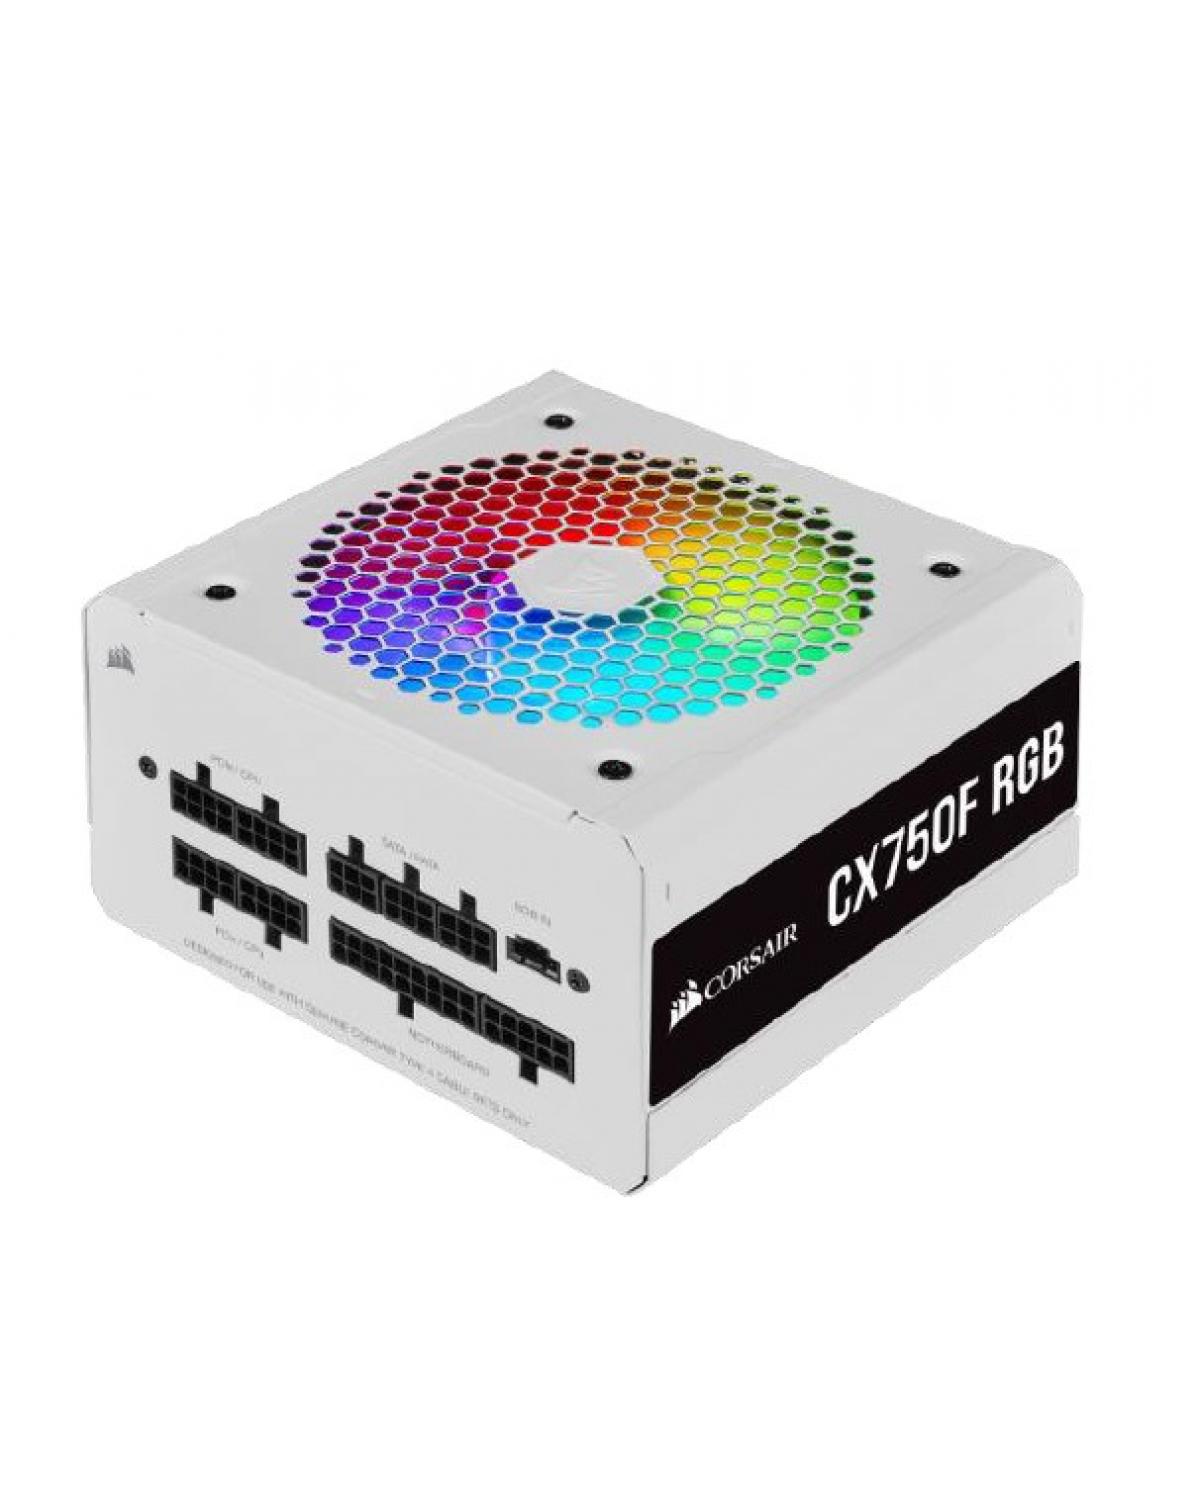 FONTE ATX 750W - CX750F FULL MODULAR - RGB WHITE - 80 PLUS BRONZE - COM CABO DE FORCA - CP-9020227-BR